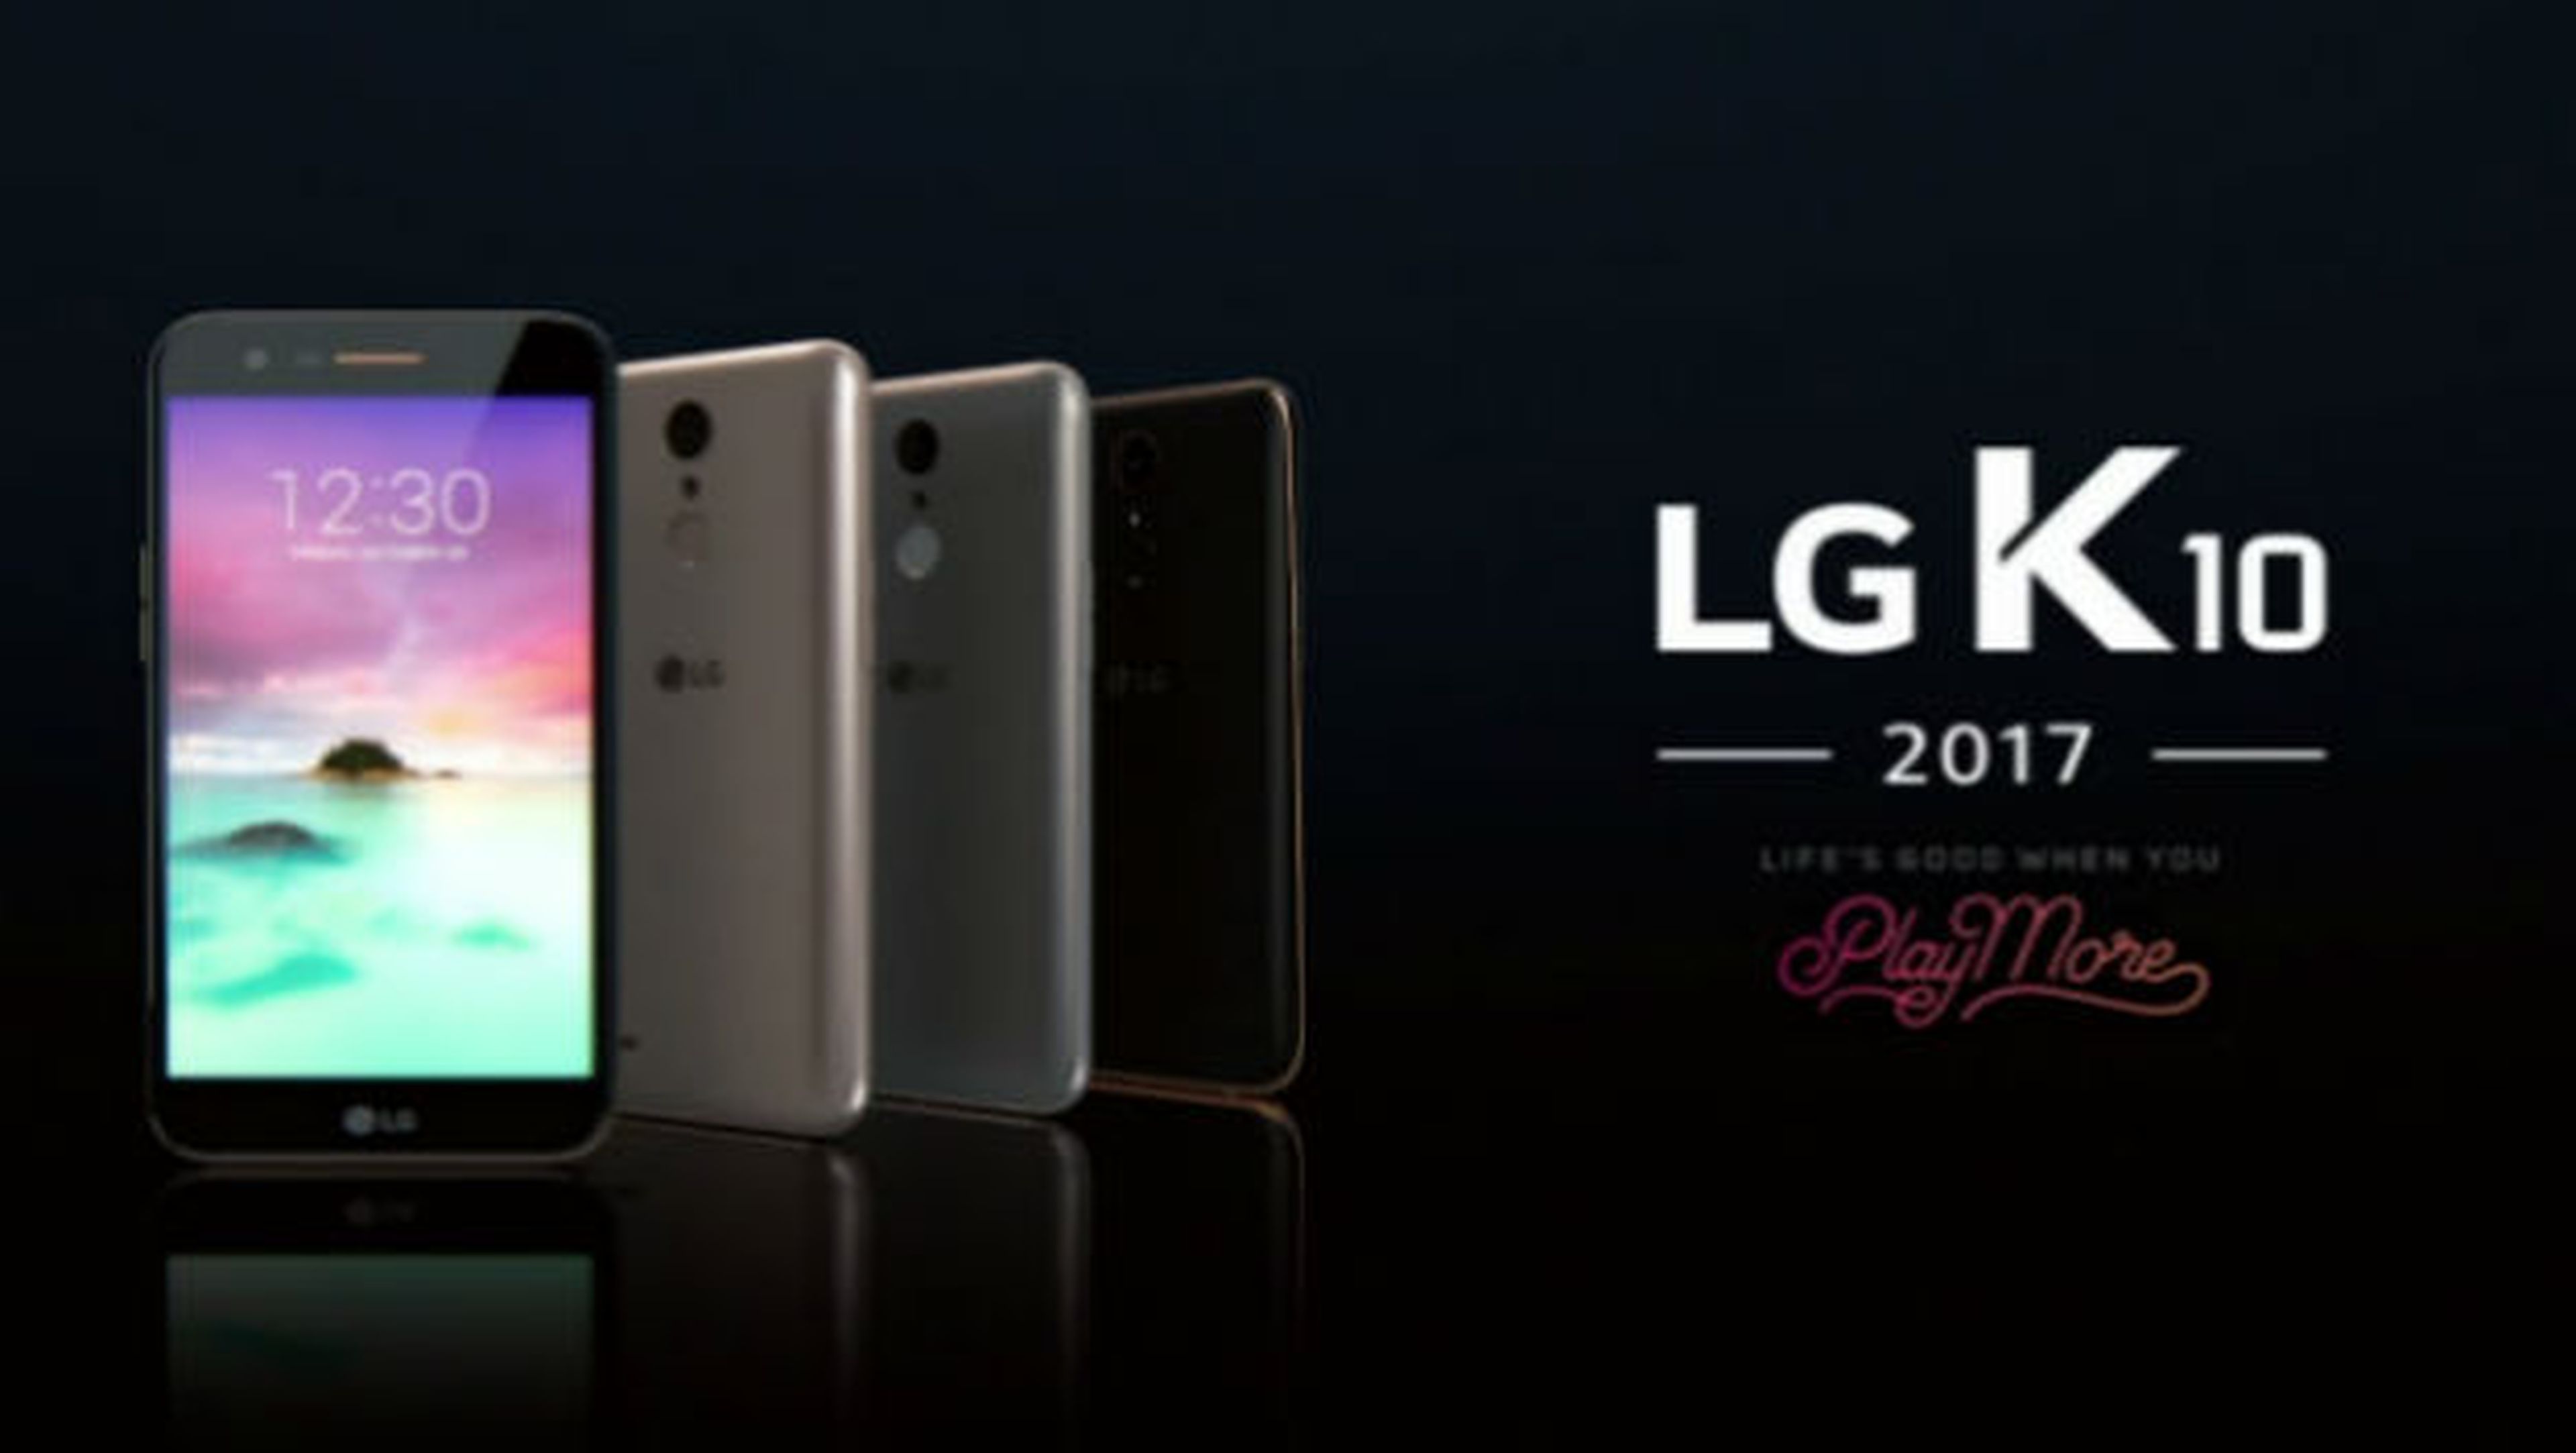 LG K10 2017.